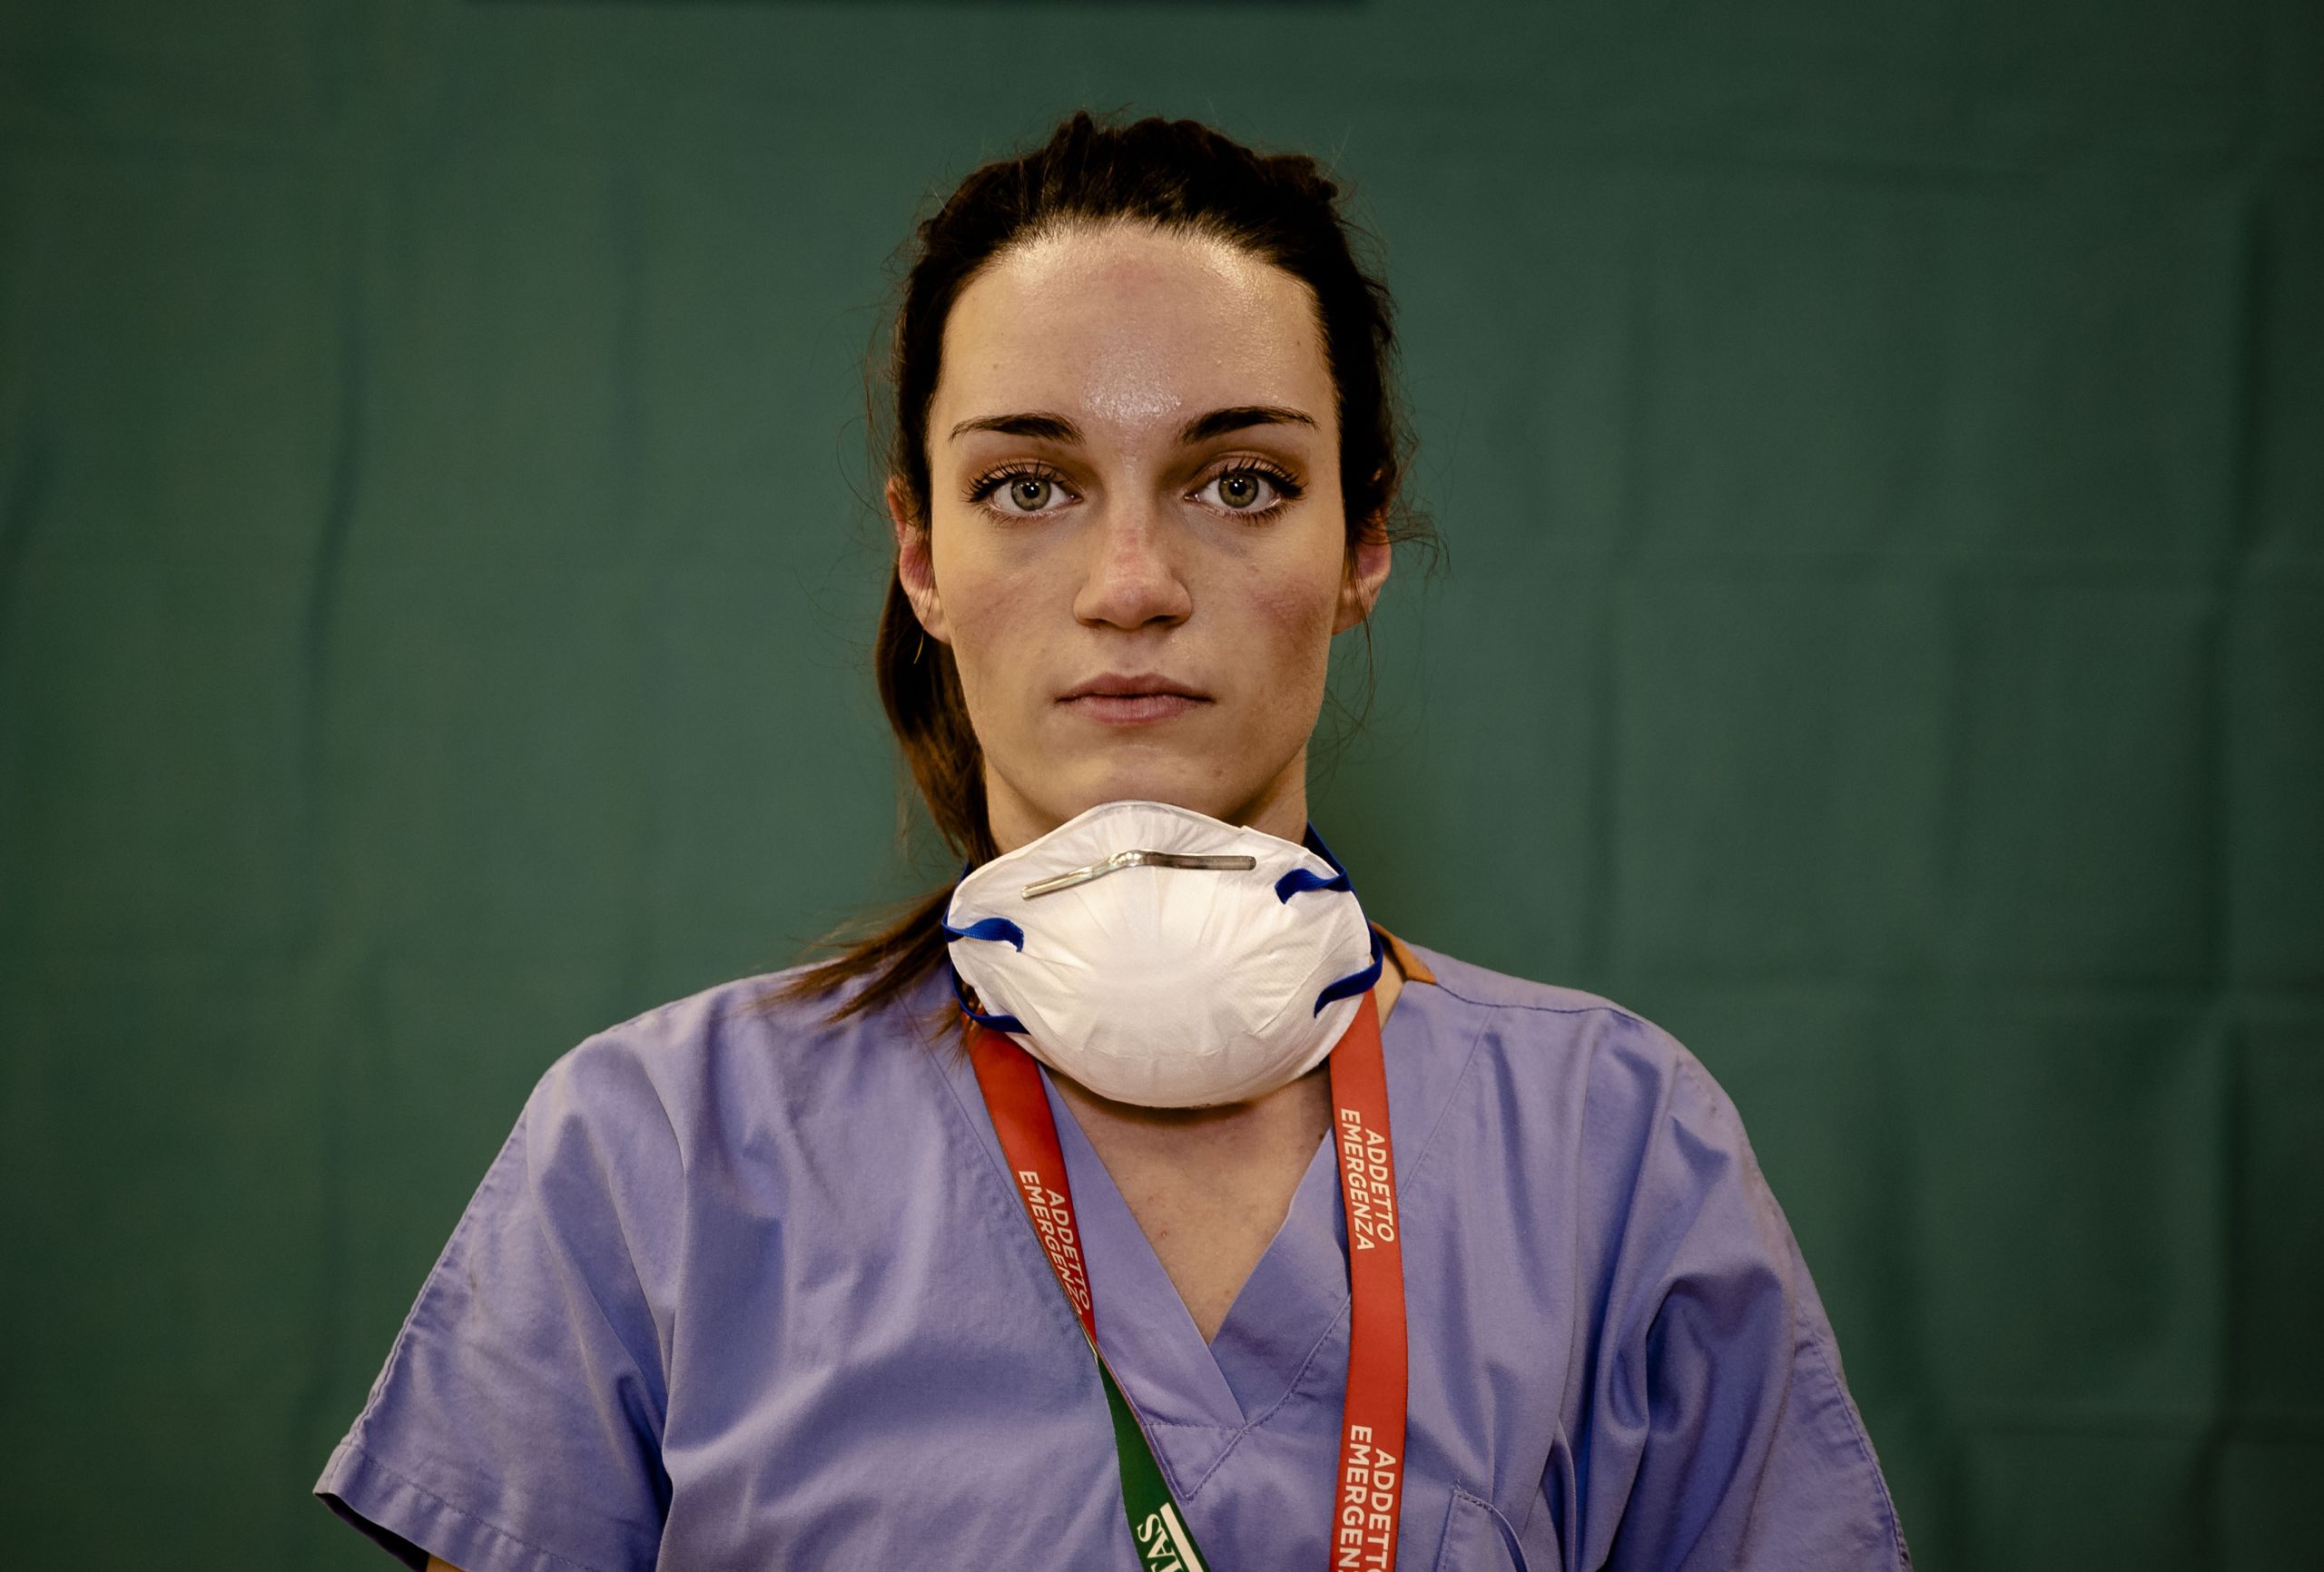 Martina Papponetti, a nurse in Bergamo, Italy.